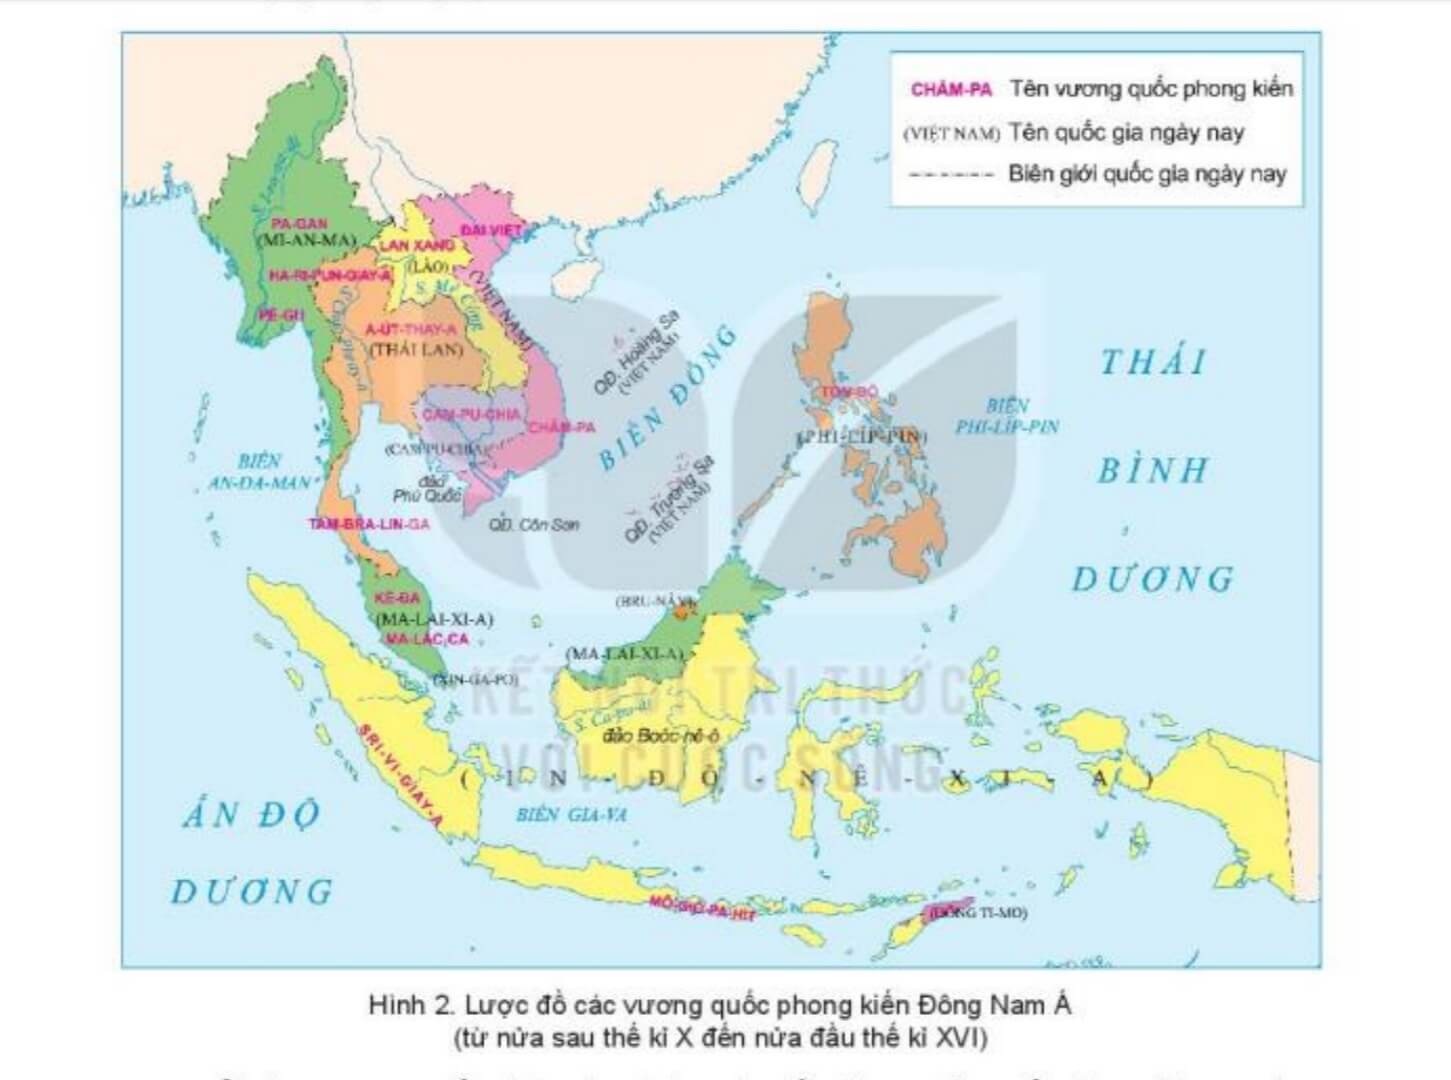 Bài 6: Các vương quốc phong kiến Đông Nam Á từ nửa sau thế kỉ X đến nửa đầu thế kỉ XVI